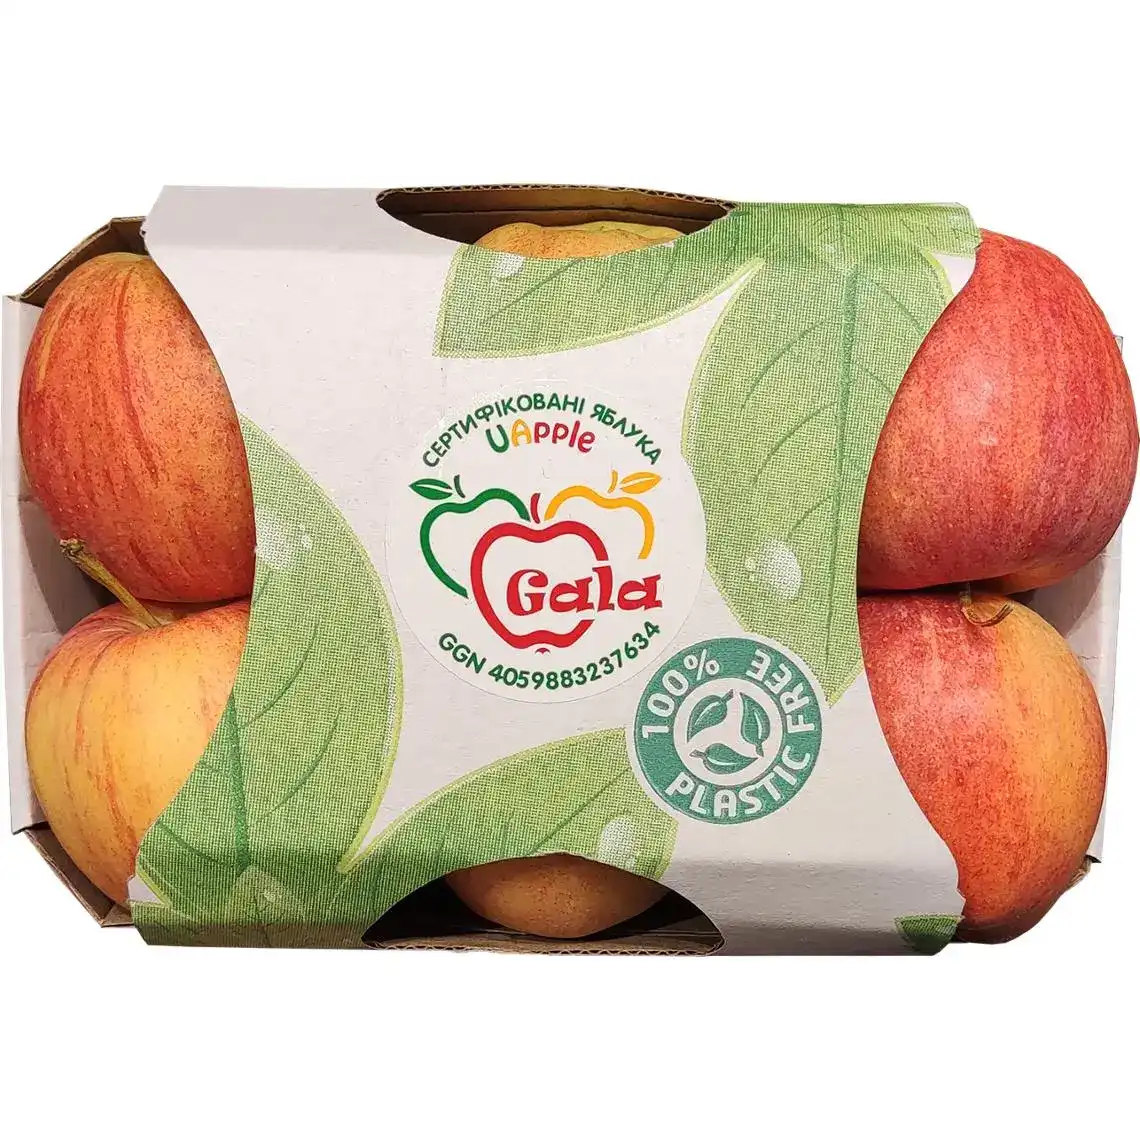 Яблуко Uapple Гала 6 шт.